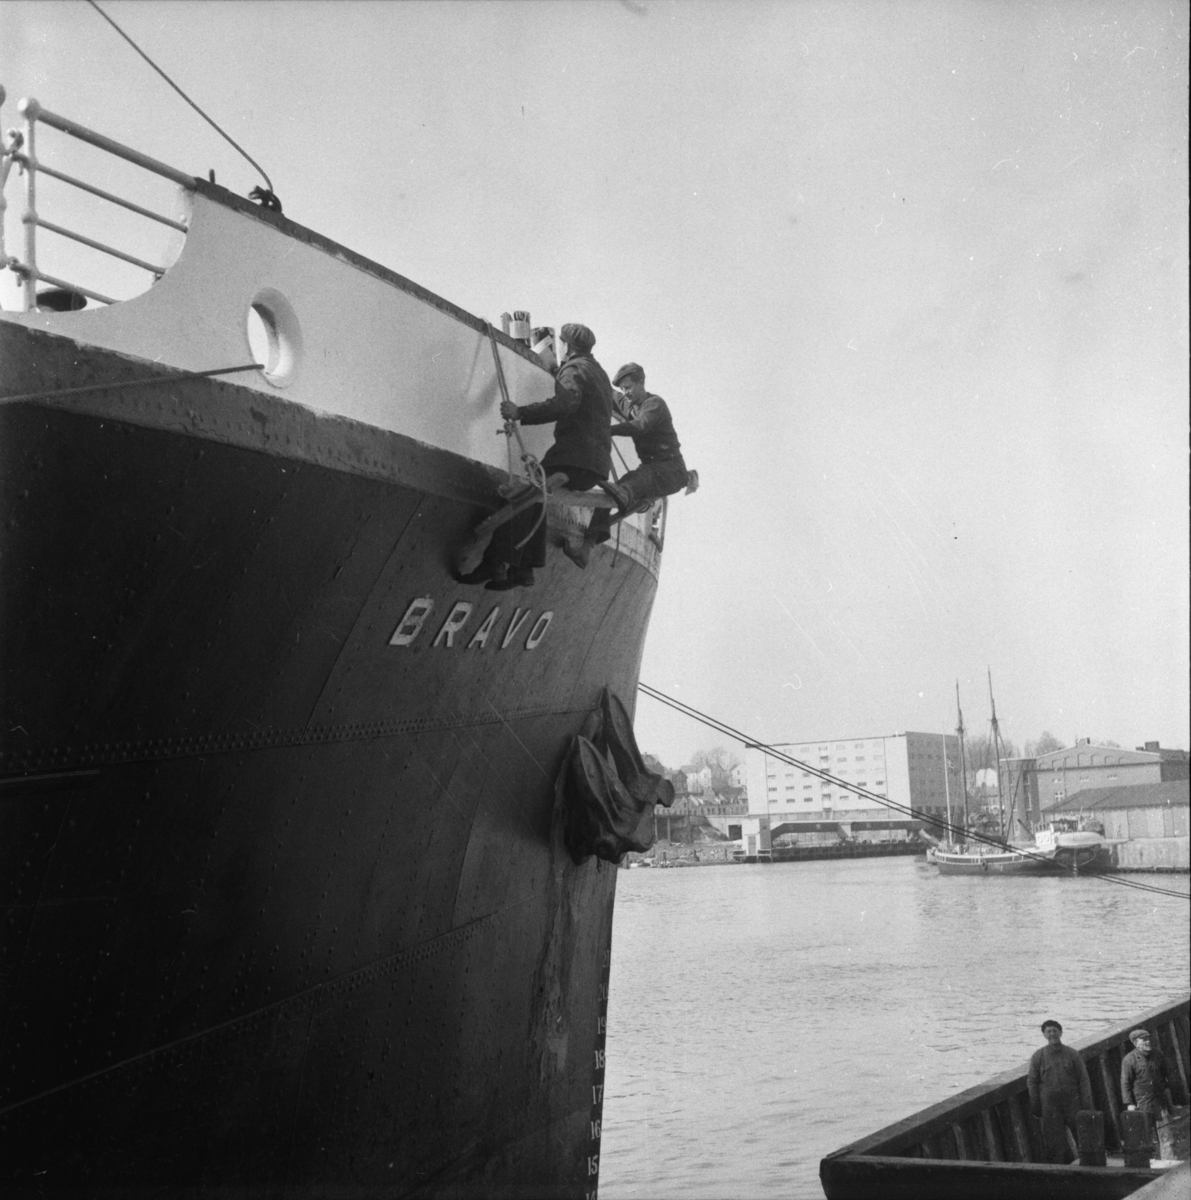 Vardens arkiv. "Vårpuss. Maling av  skipet "Bravo" fra Hull på Skiens havn" 08.04.1954